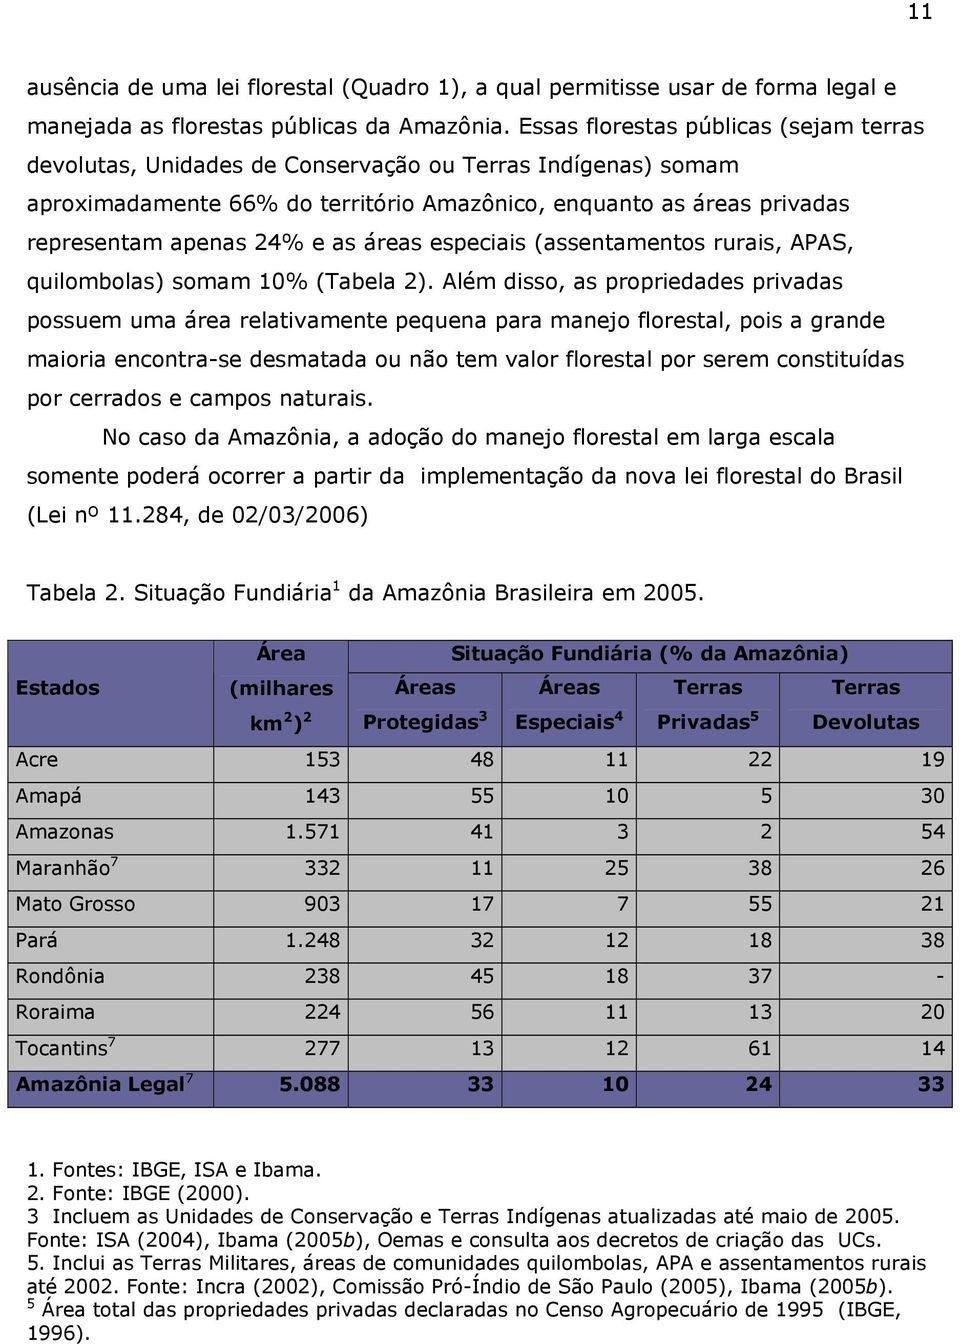 as áreas especiais (assentamentos rurais, APAS, quilombolas) somam 10% (Tabela 2).